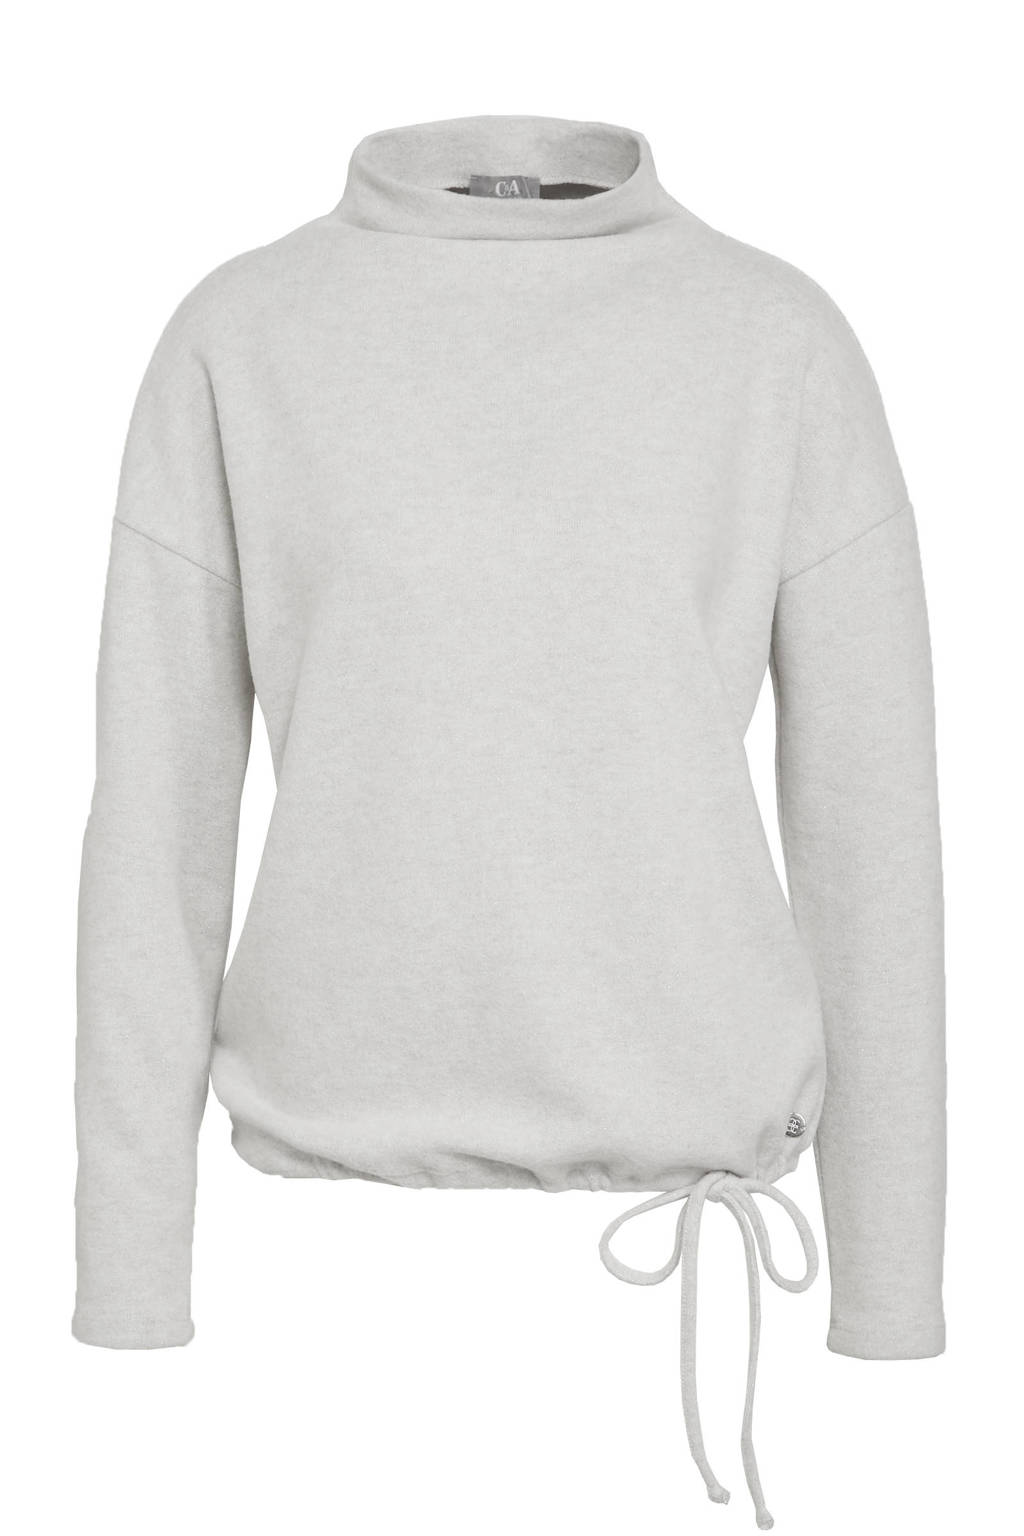 Lichtgrijze dames C&A sweater van polyester met lange mouwen, opstaande kraag en elastische boord